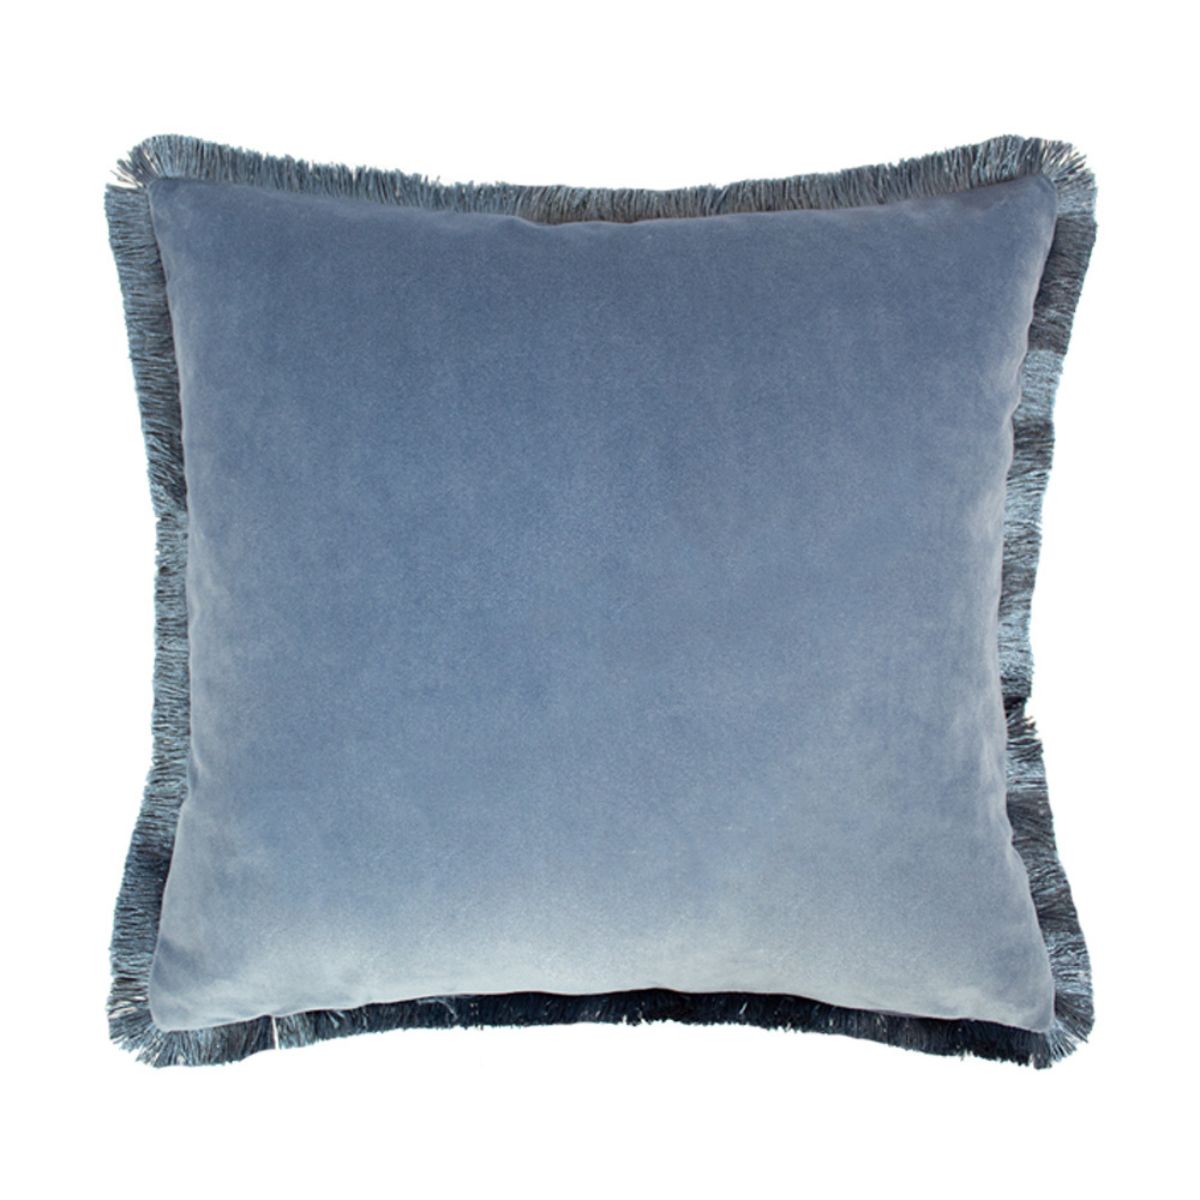 Avari Blue Floral Cushion 43x43 - 2